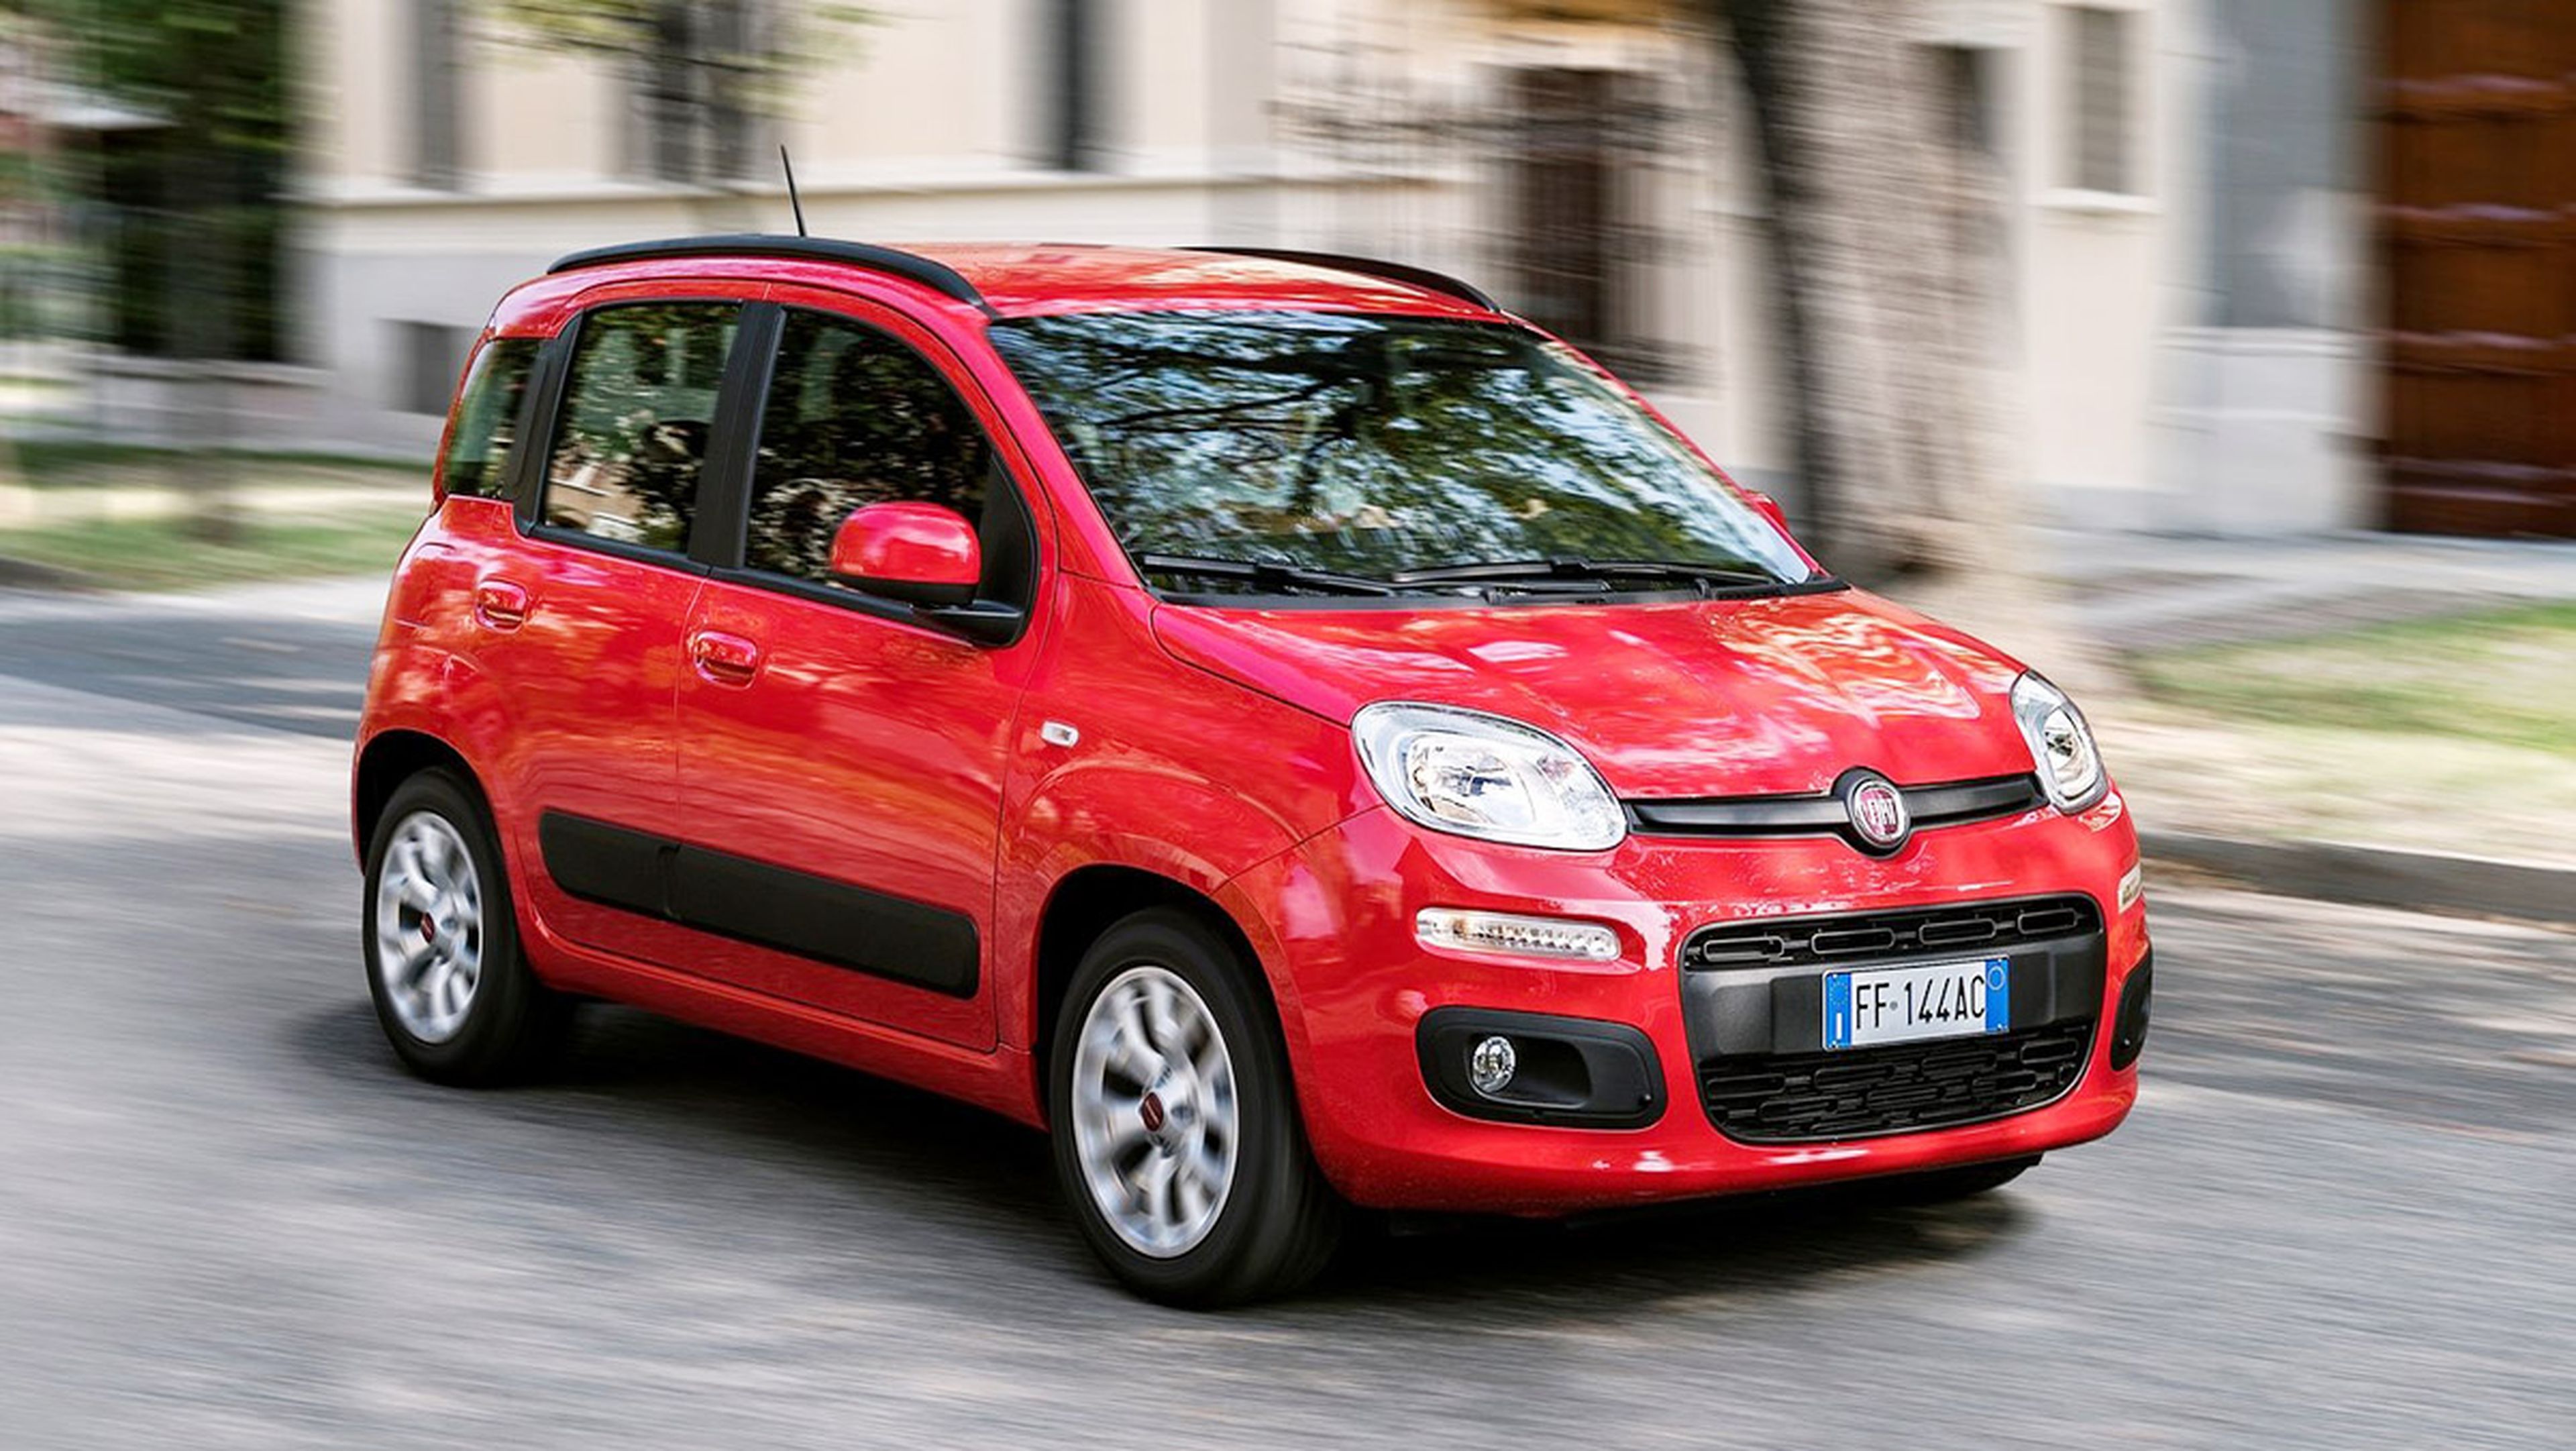 Coches nuevos por 6.000 euros - Fiat Panda